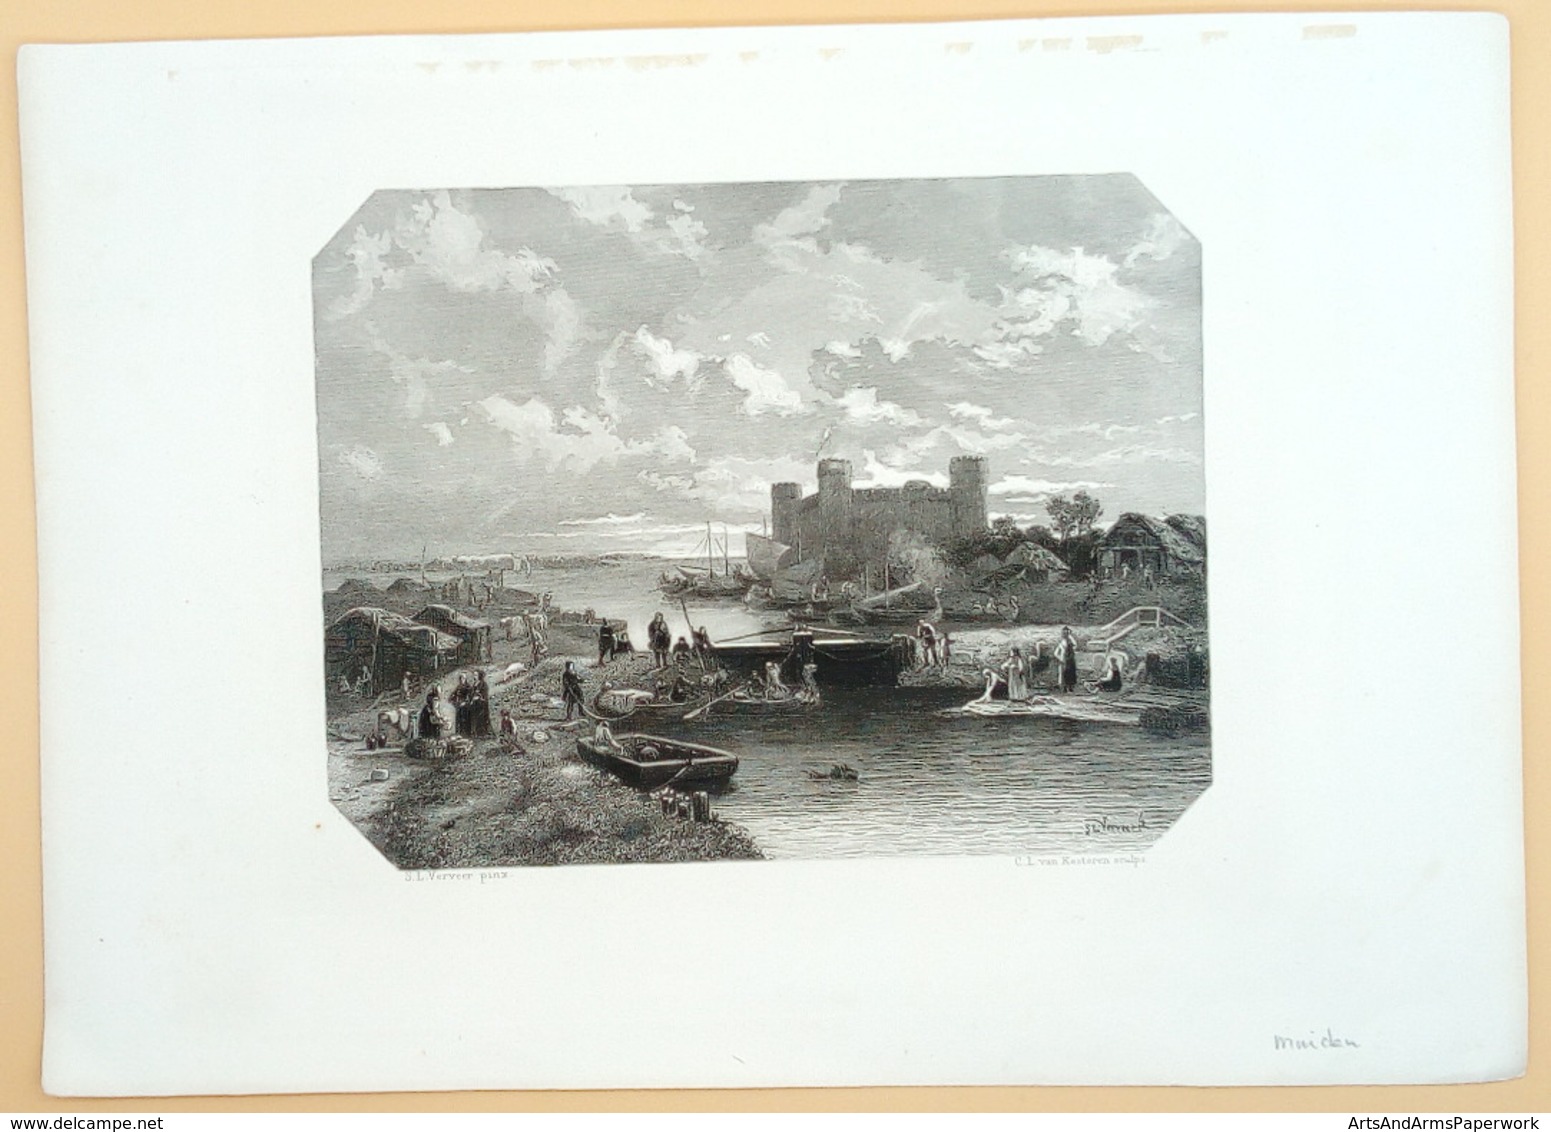 Muiden/ Muiden (NL), 1869, Kesteren, Verveer - Kunst